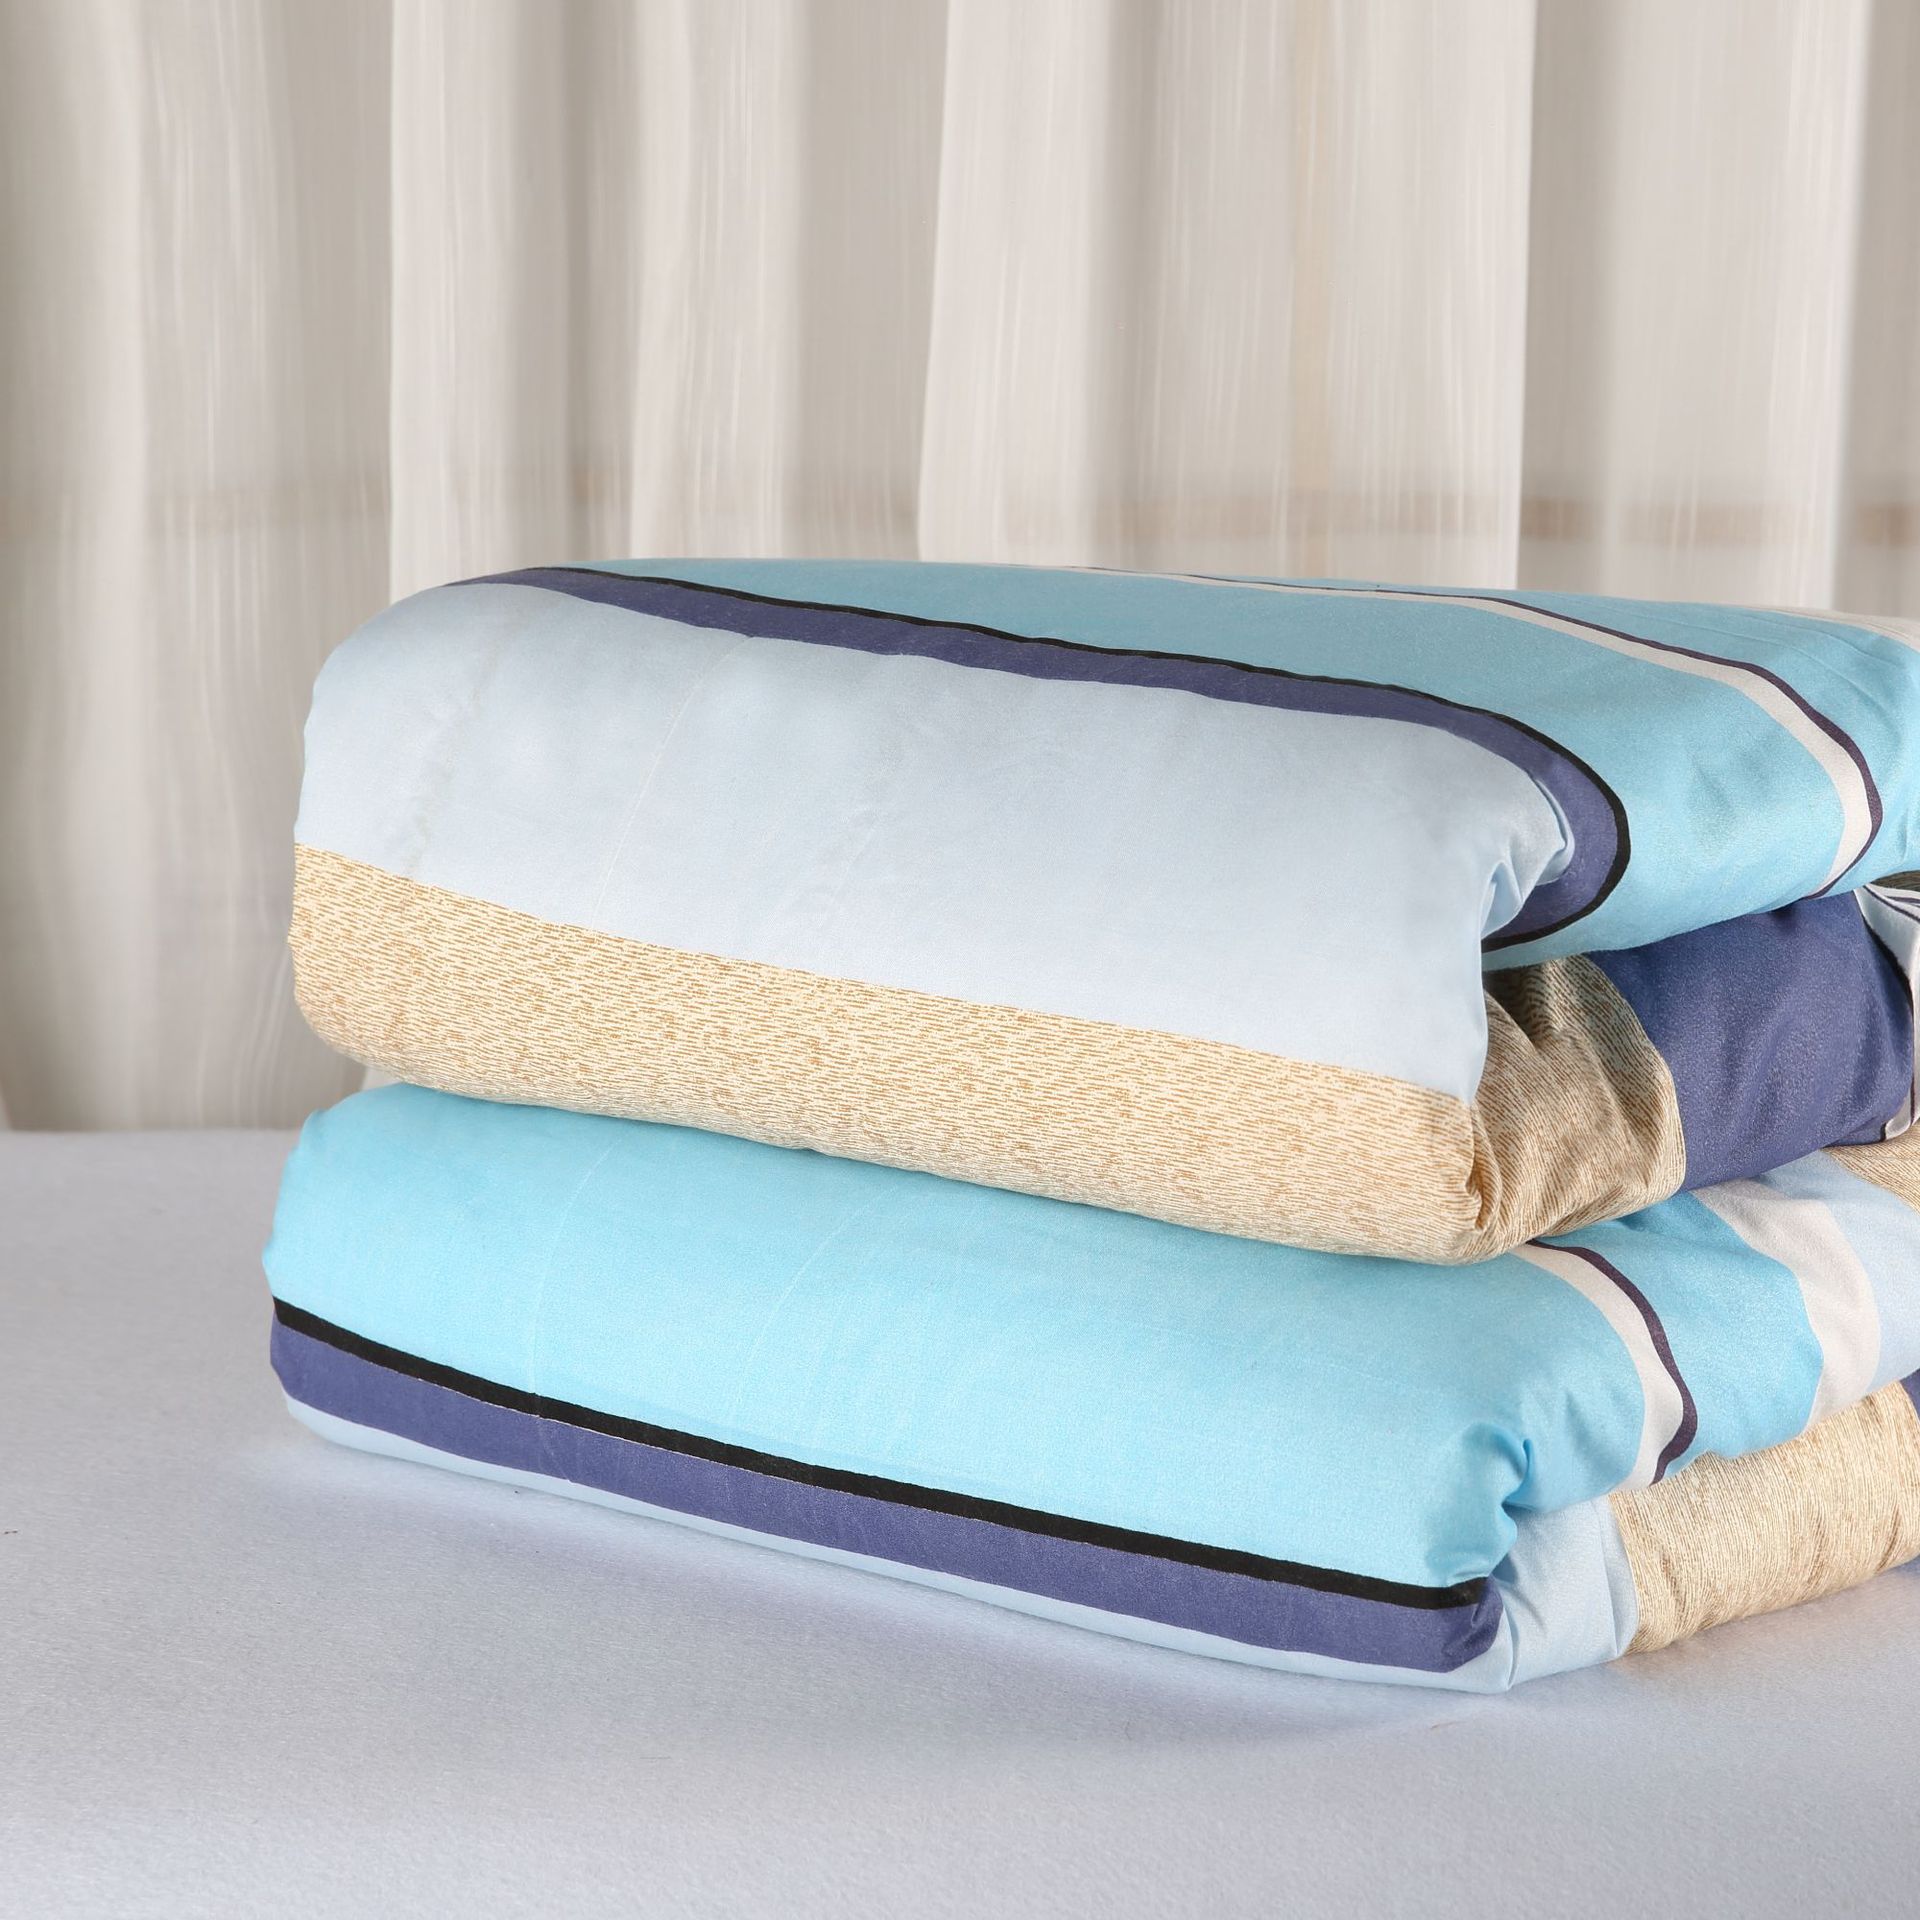 水洗棉被套罩學生宿舍褥子墊單枕家紡春夏季直銷批發高低床三件套